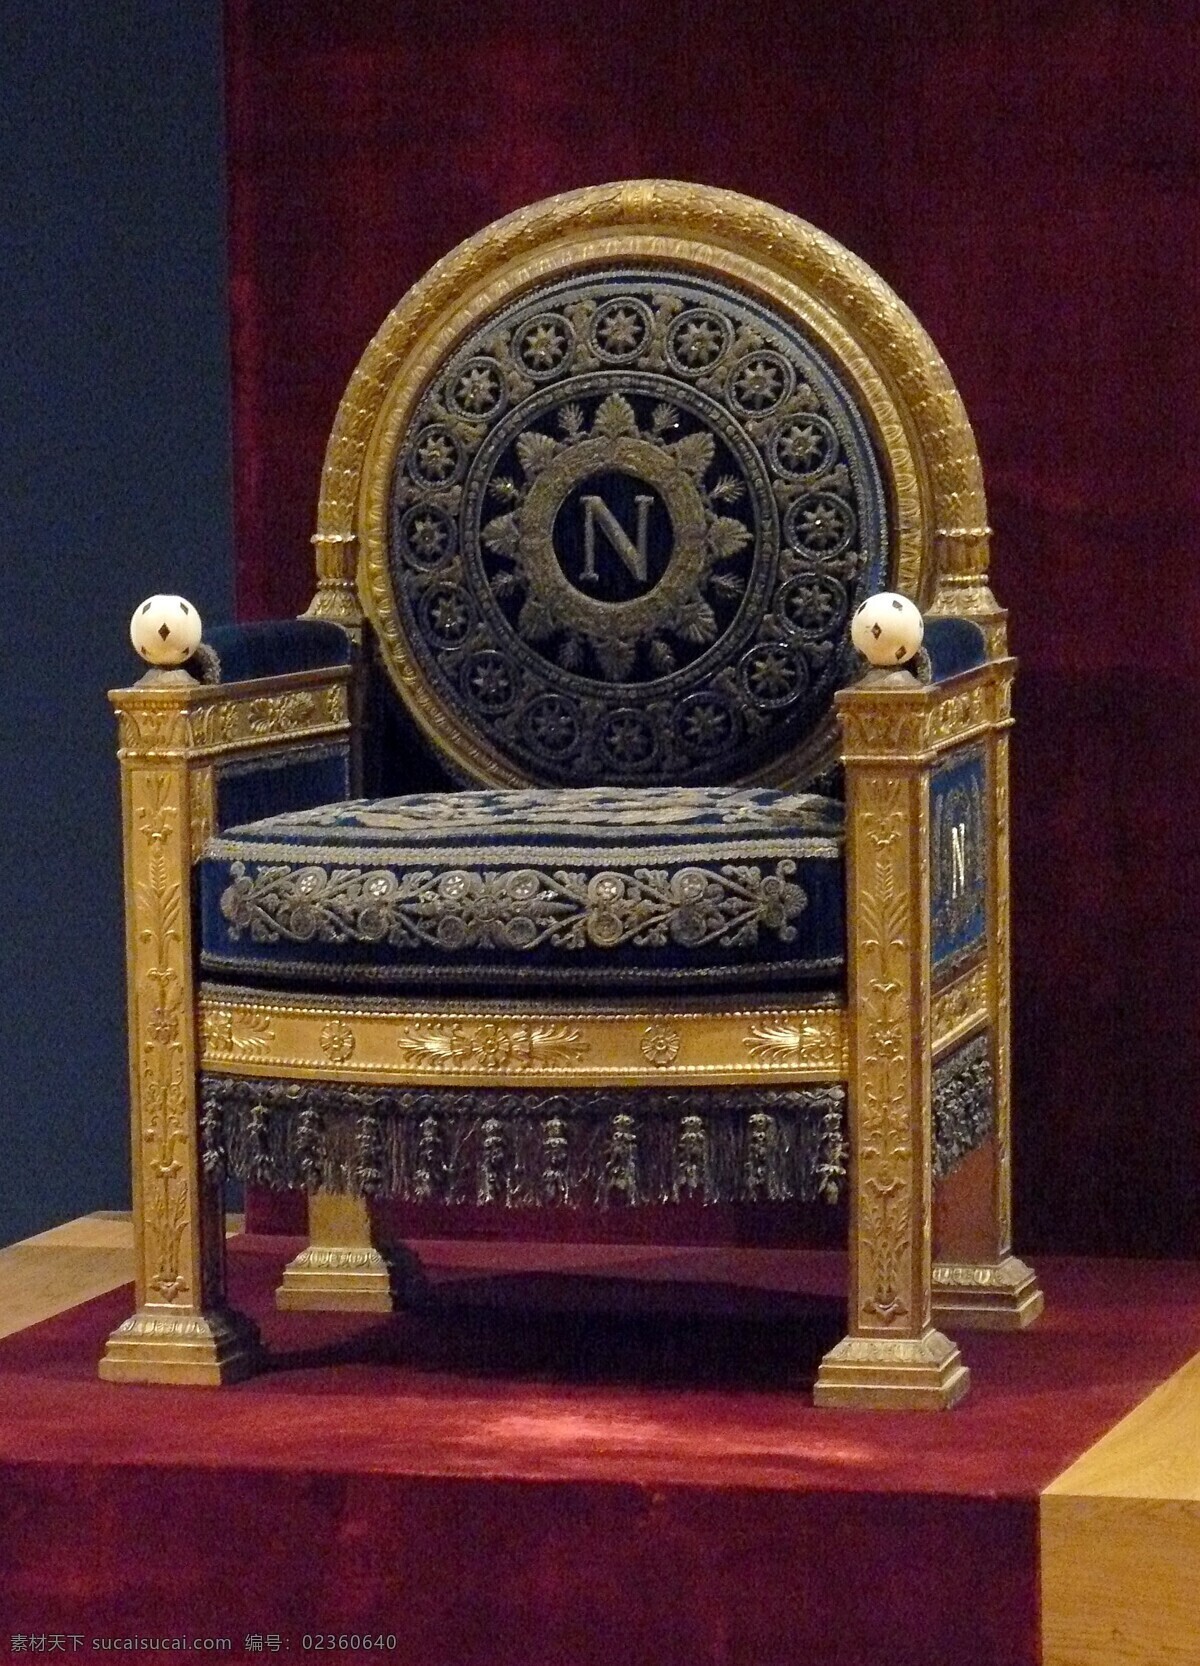 拿破仑 波拿巴 宝座 家俱 座椅 宫廷 古典 欧式 皇家 豪华 雕刻 绘画 漆金 花纹 图案 地板 家居生活 生活百科